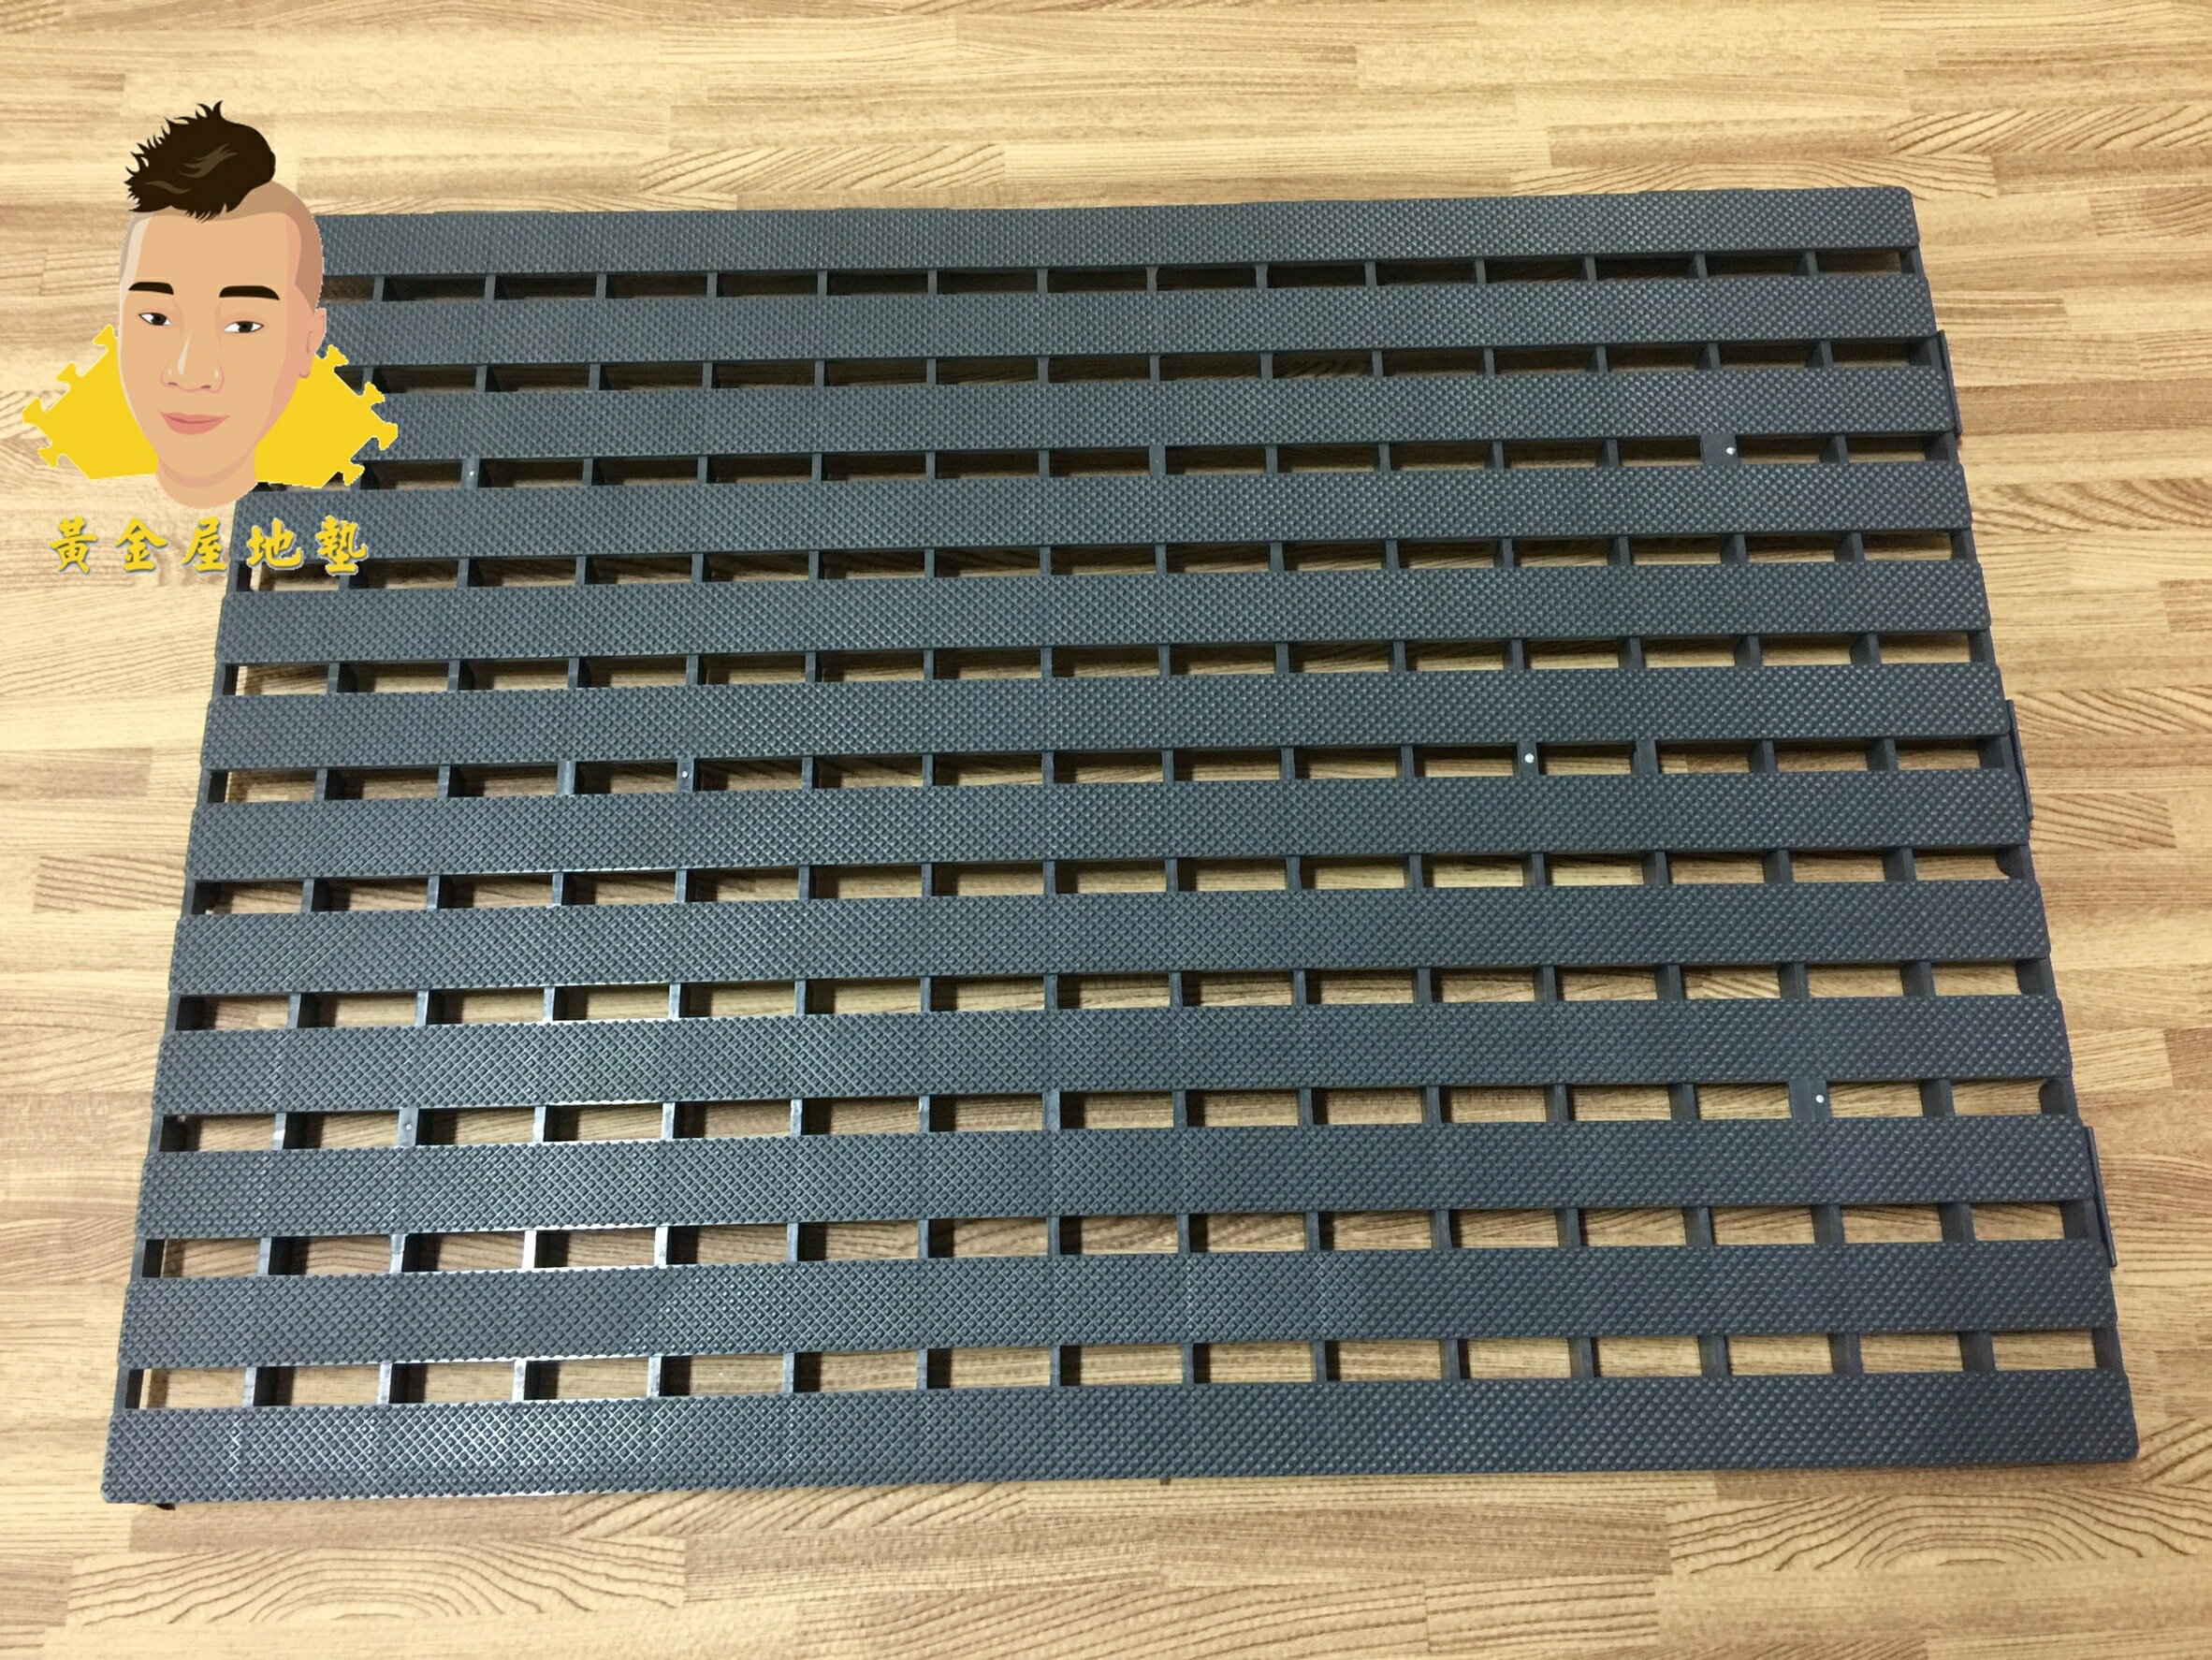 (黃金屋)外銷超耐用超抗壓塑膠棧板.排水功能佳 萬用止滑棧板45*60*2.0cm.